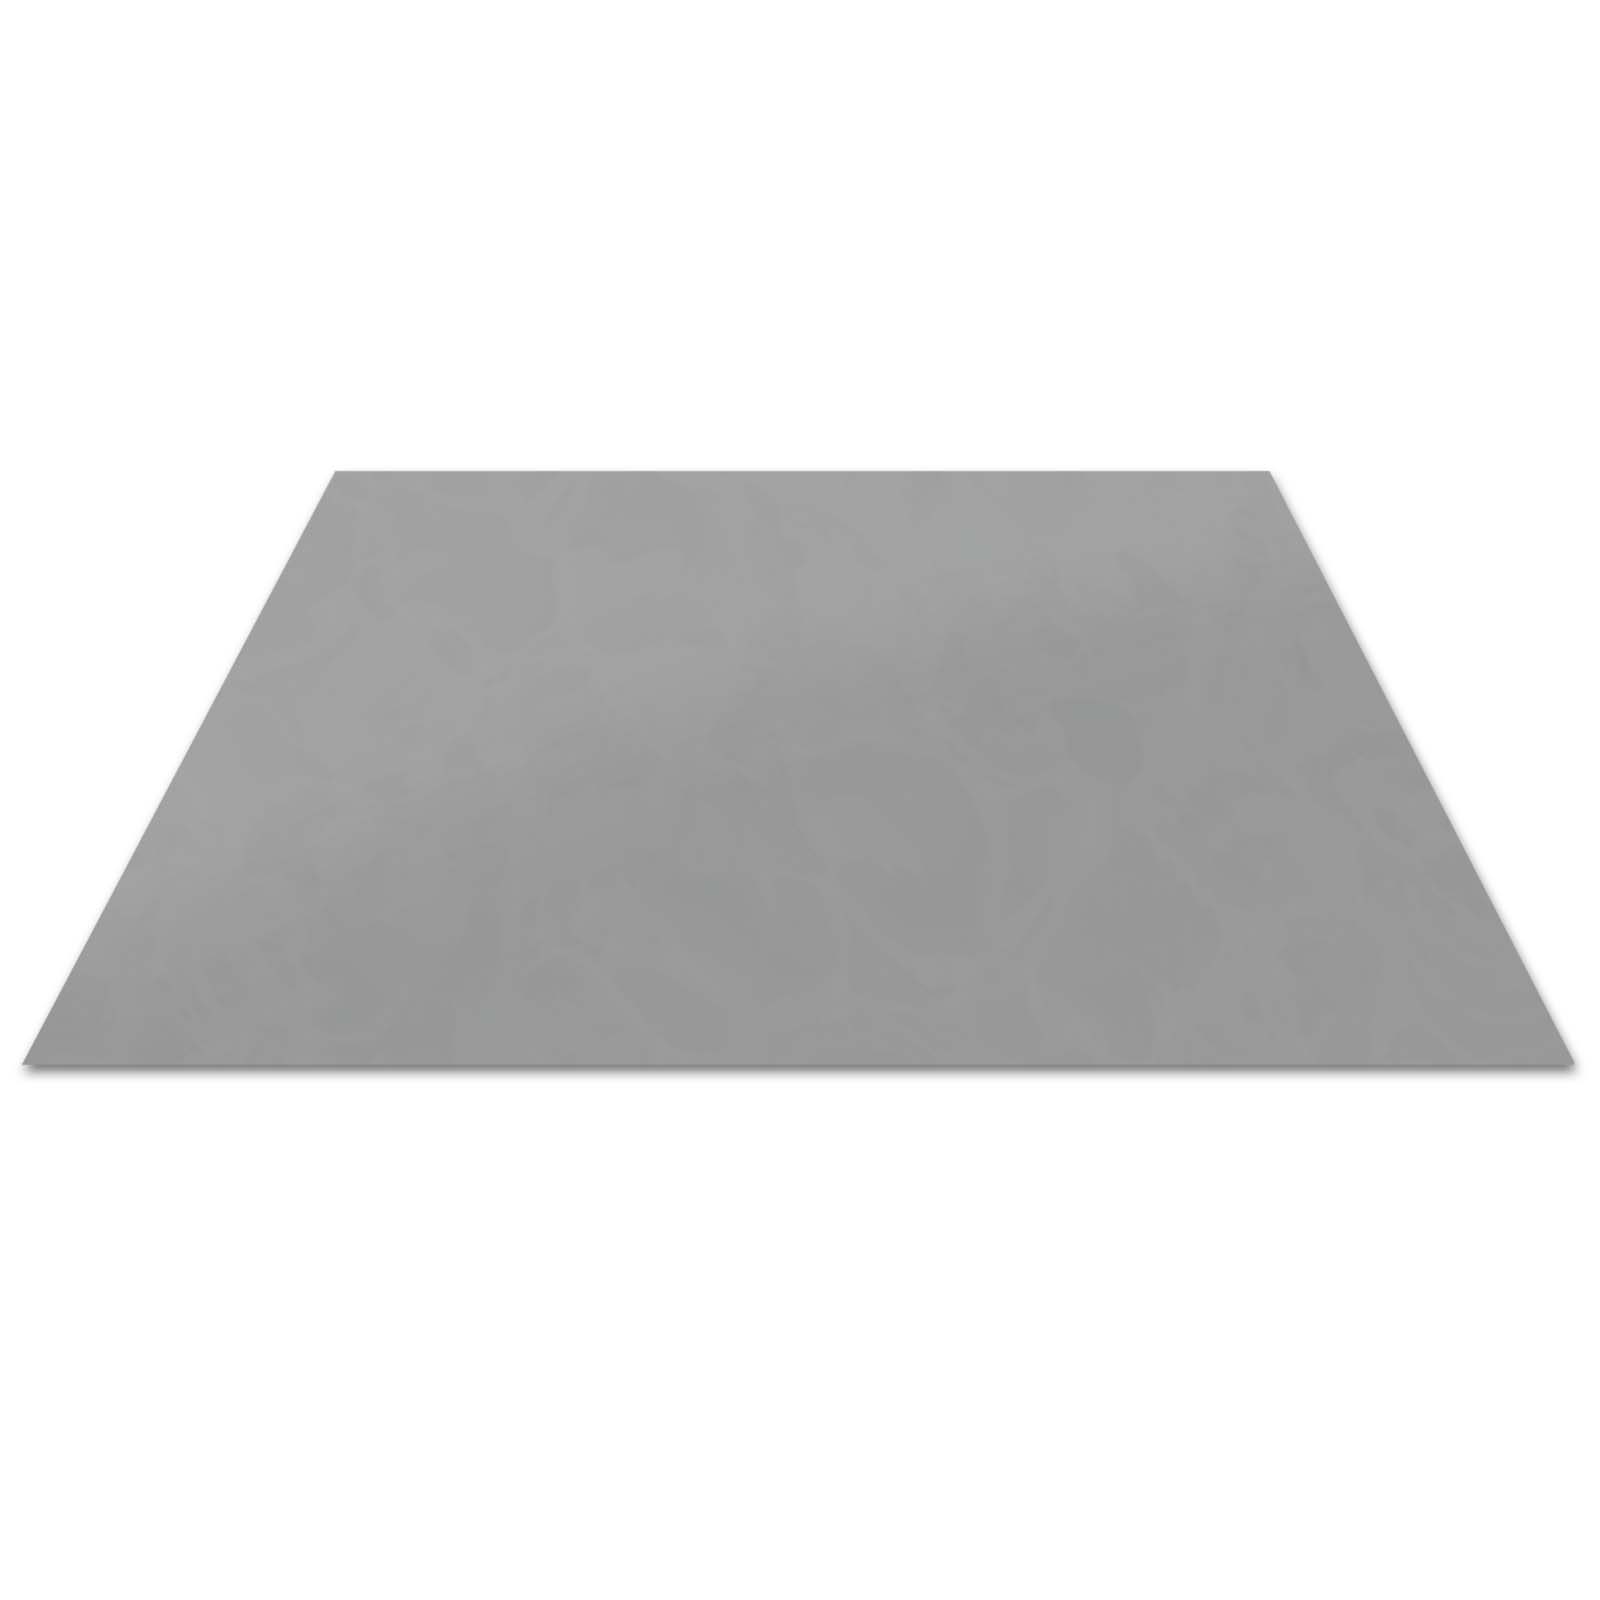 Tafel Alu silbermetallic RAL 9006 0,8 x 1000 x 2000 mm (2m²/Tafel) (Preis pro Stk.)